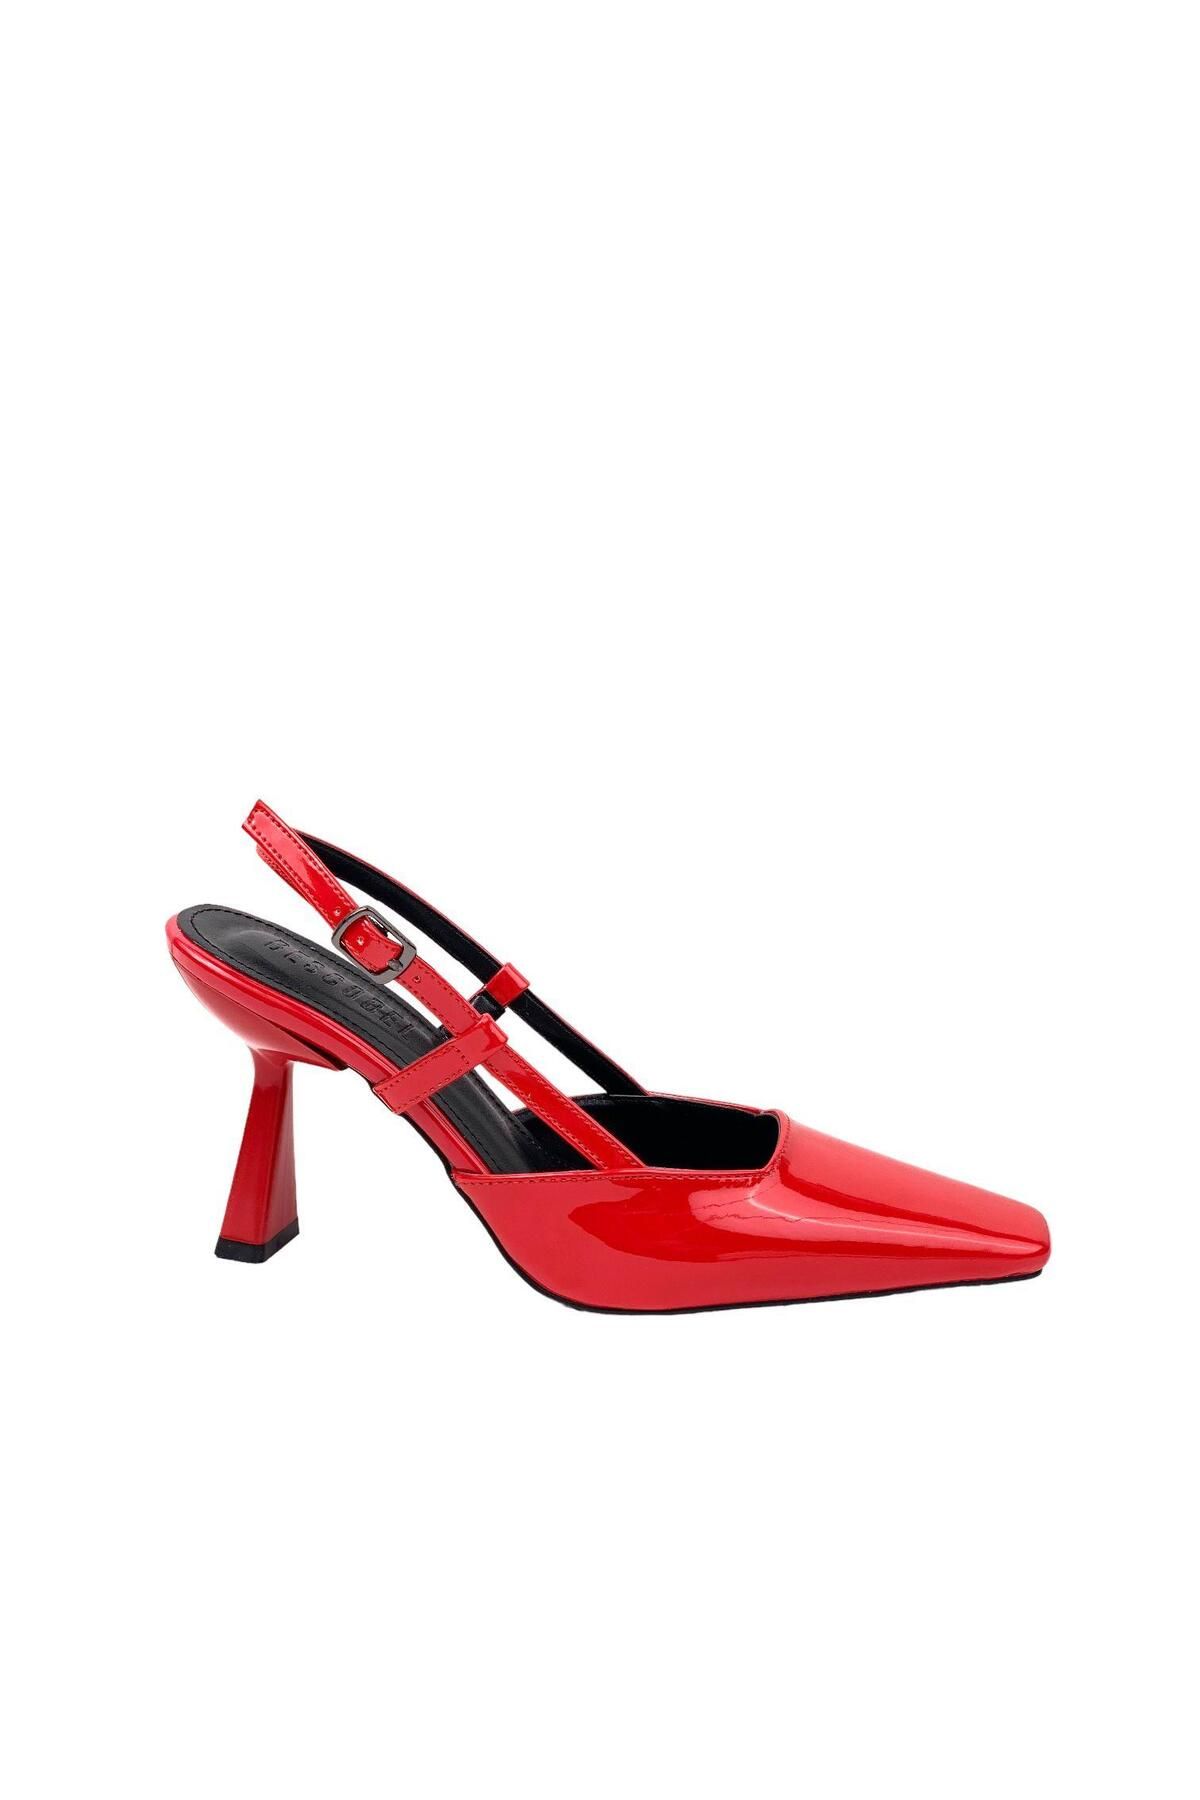 bescobel Kadın Yojda Kırmızı Rugan Topuklu Arkası AÇık Ayakkabı 8 CM 765